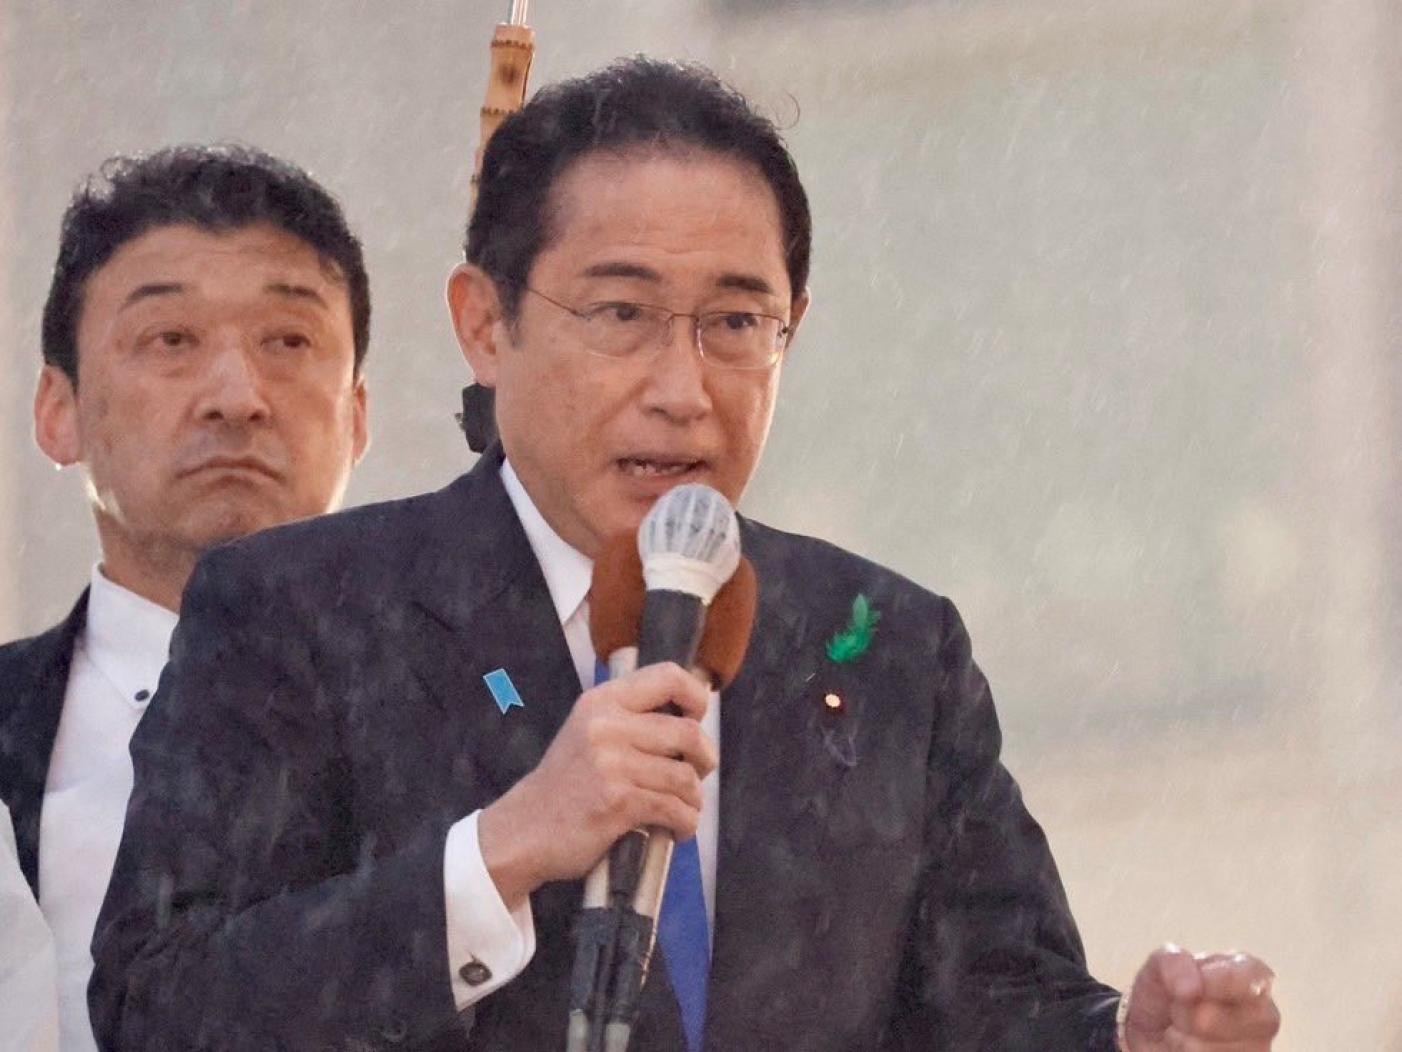 日本首相岸田文雄（見圖）15日上午輔選時，遭24歲男子木村隆二丟擲爆裂物，所幸平安未受傷。翻攝岸田文雄臉書